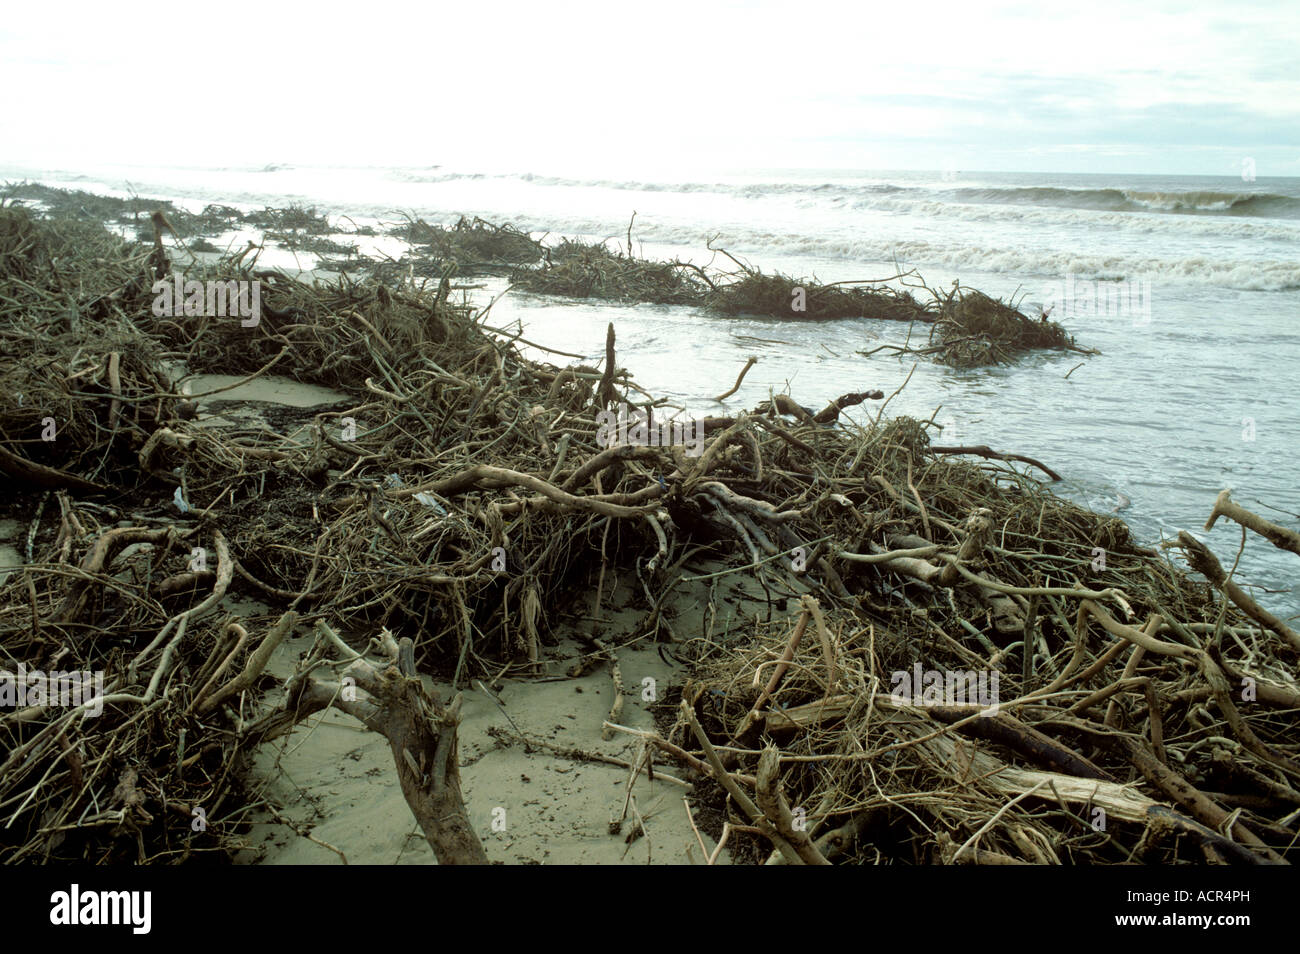 Flotsum naturale del legno e radici di albero gettato sulla spiaggia dopo forti tempeste Marocco Foto Stock